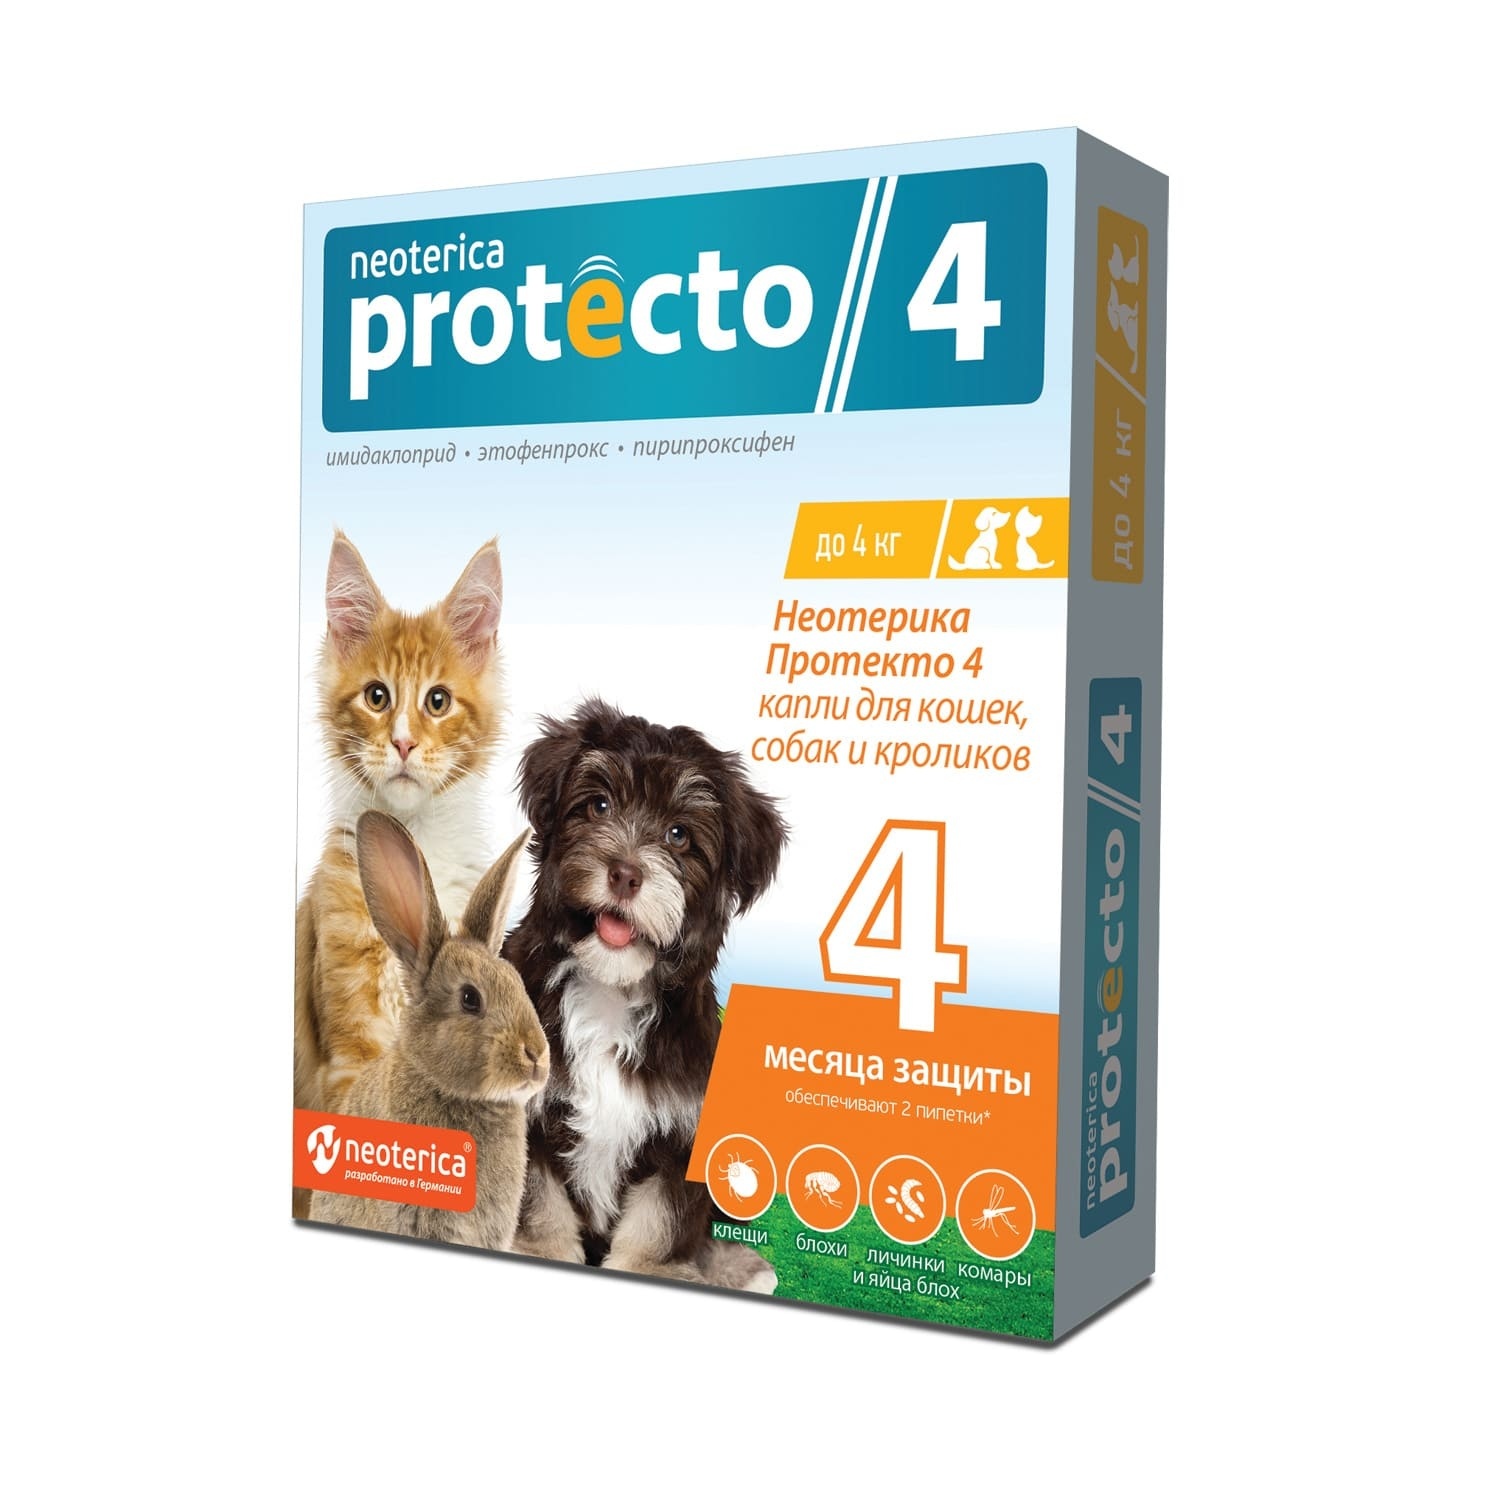 Neoterica Protecto капли от блох и клещей для кошек и собак до 4 кг, 2 шт. (56 г) Neoterica Protecto капли от блох и клещей для кошек и собак до 4 кг, 2 шт. (56 г) - фото 1